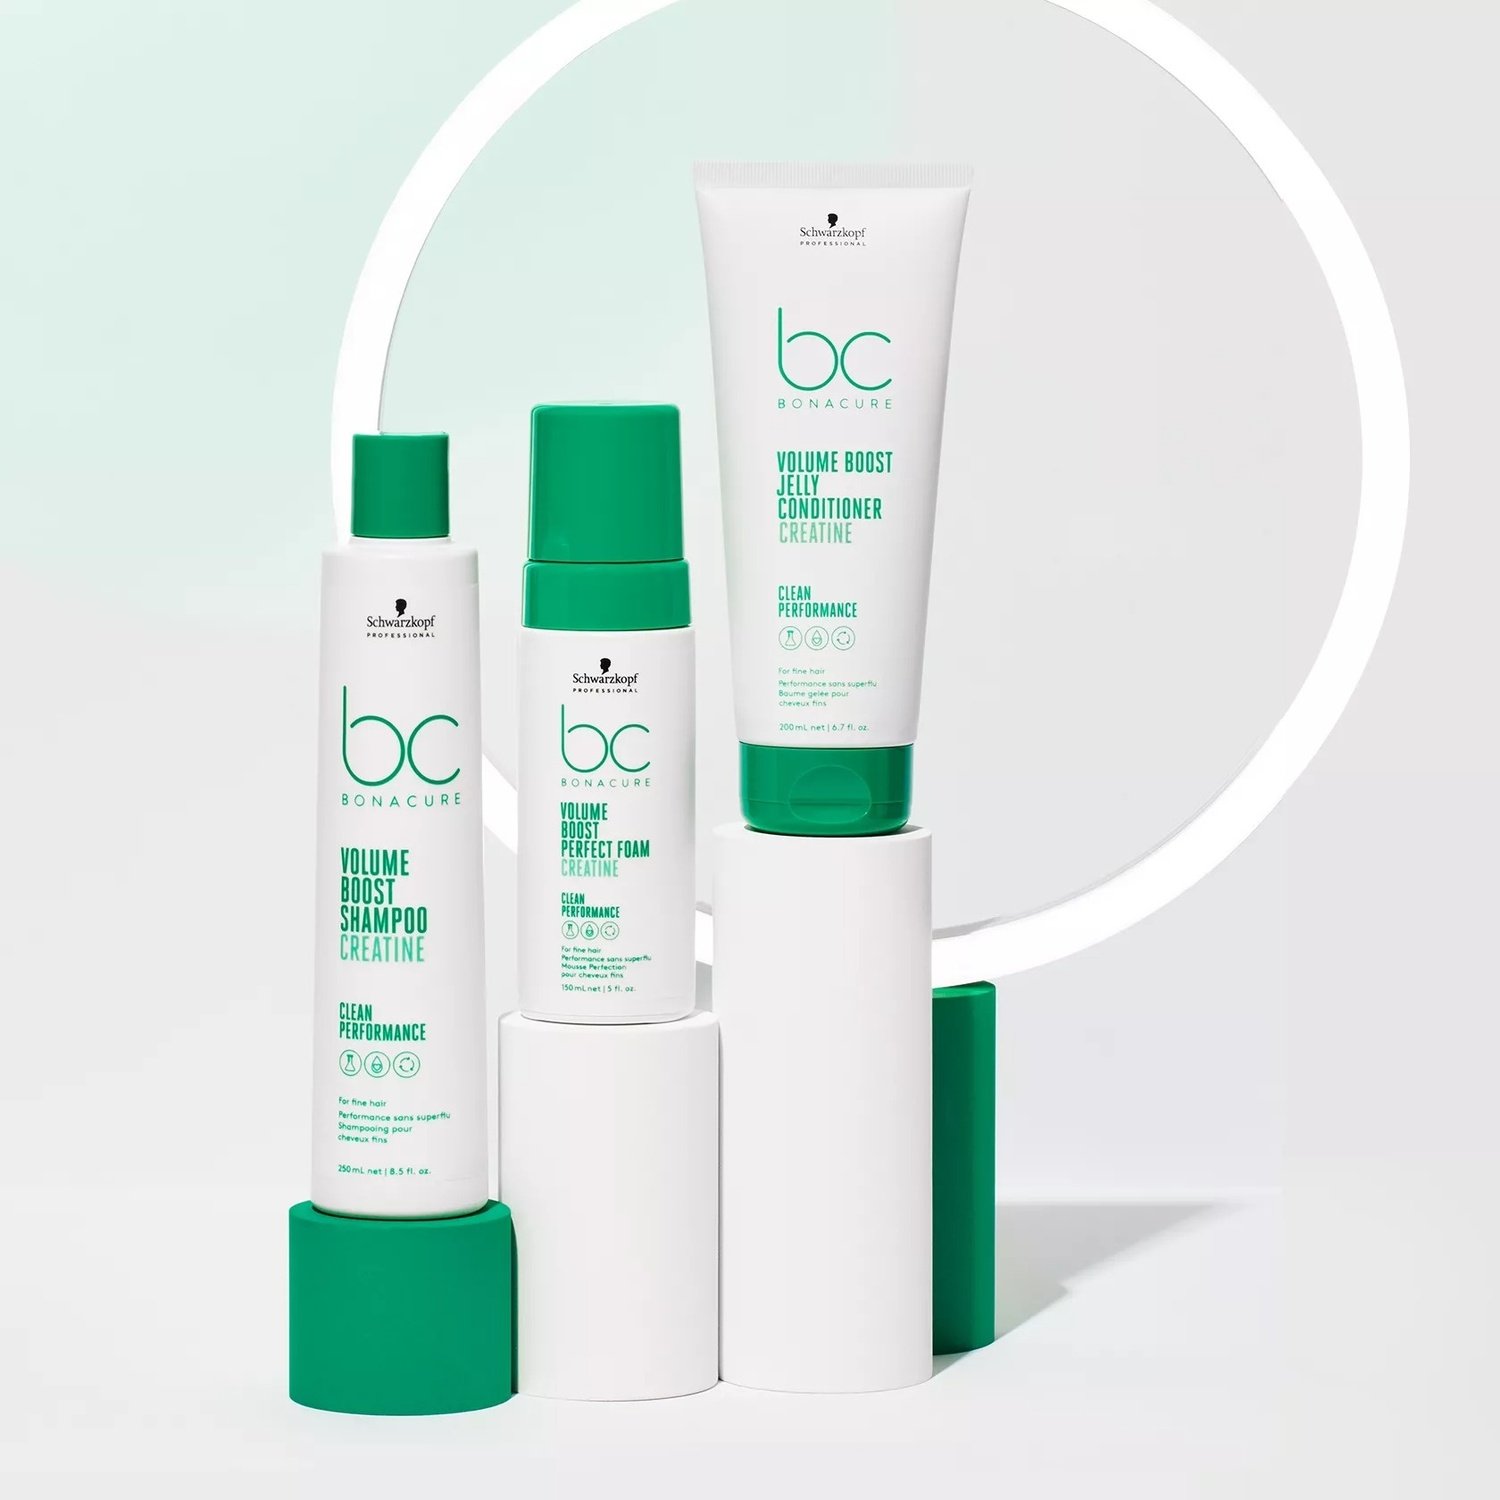 Пенка Schwarzkopf Professional BC Bonacure Volume Boost Perfect Foam Ceratine для объема волос 150 мл - фото 7